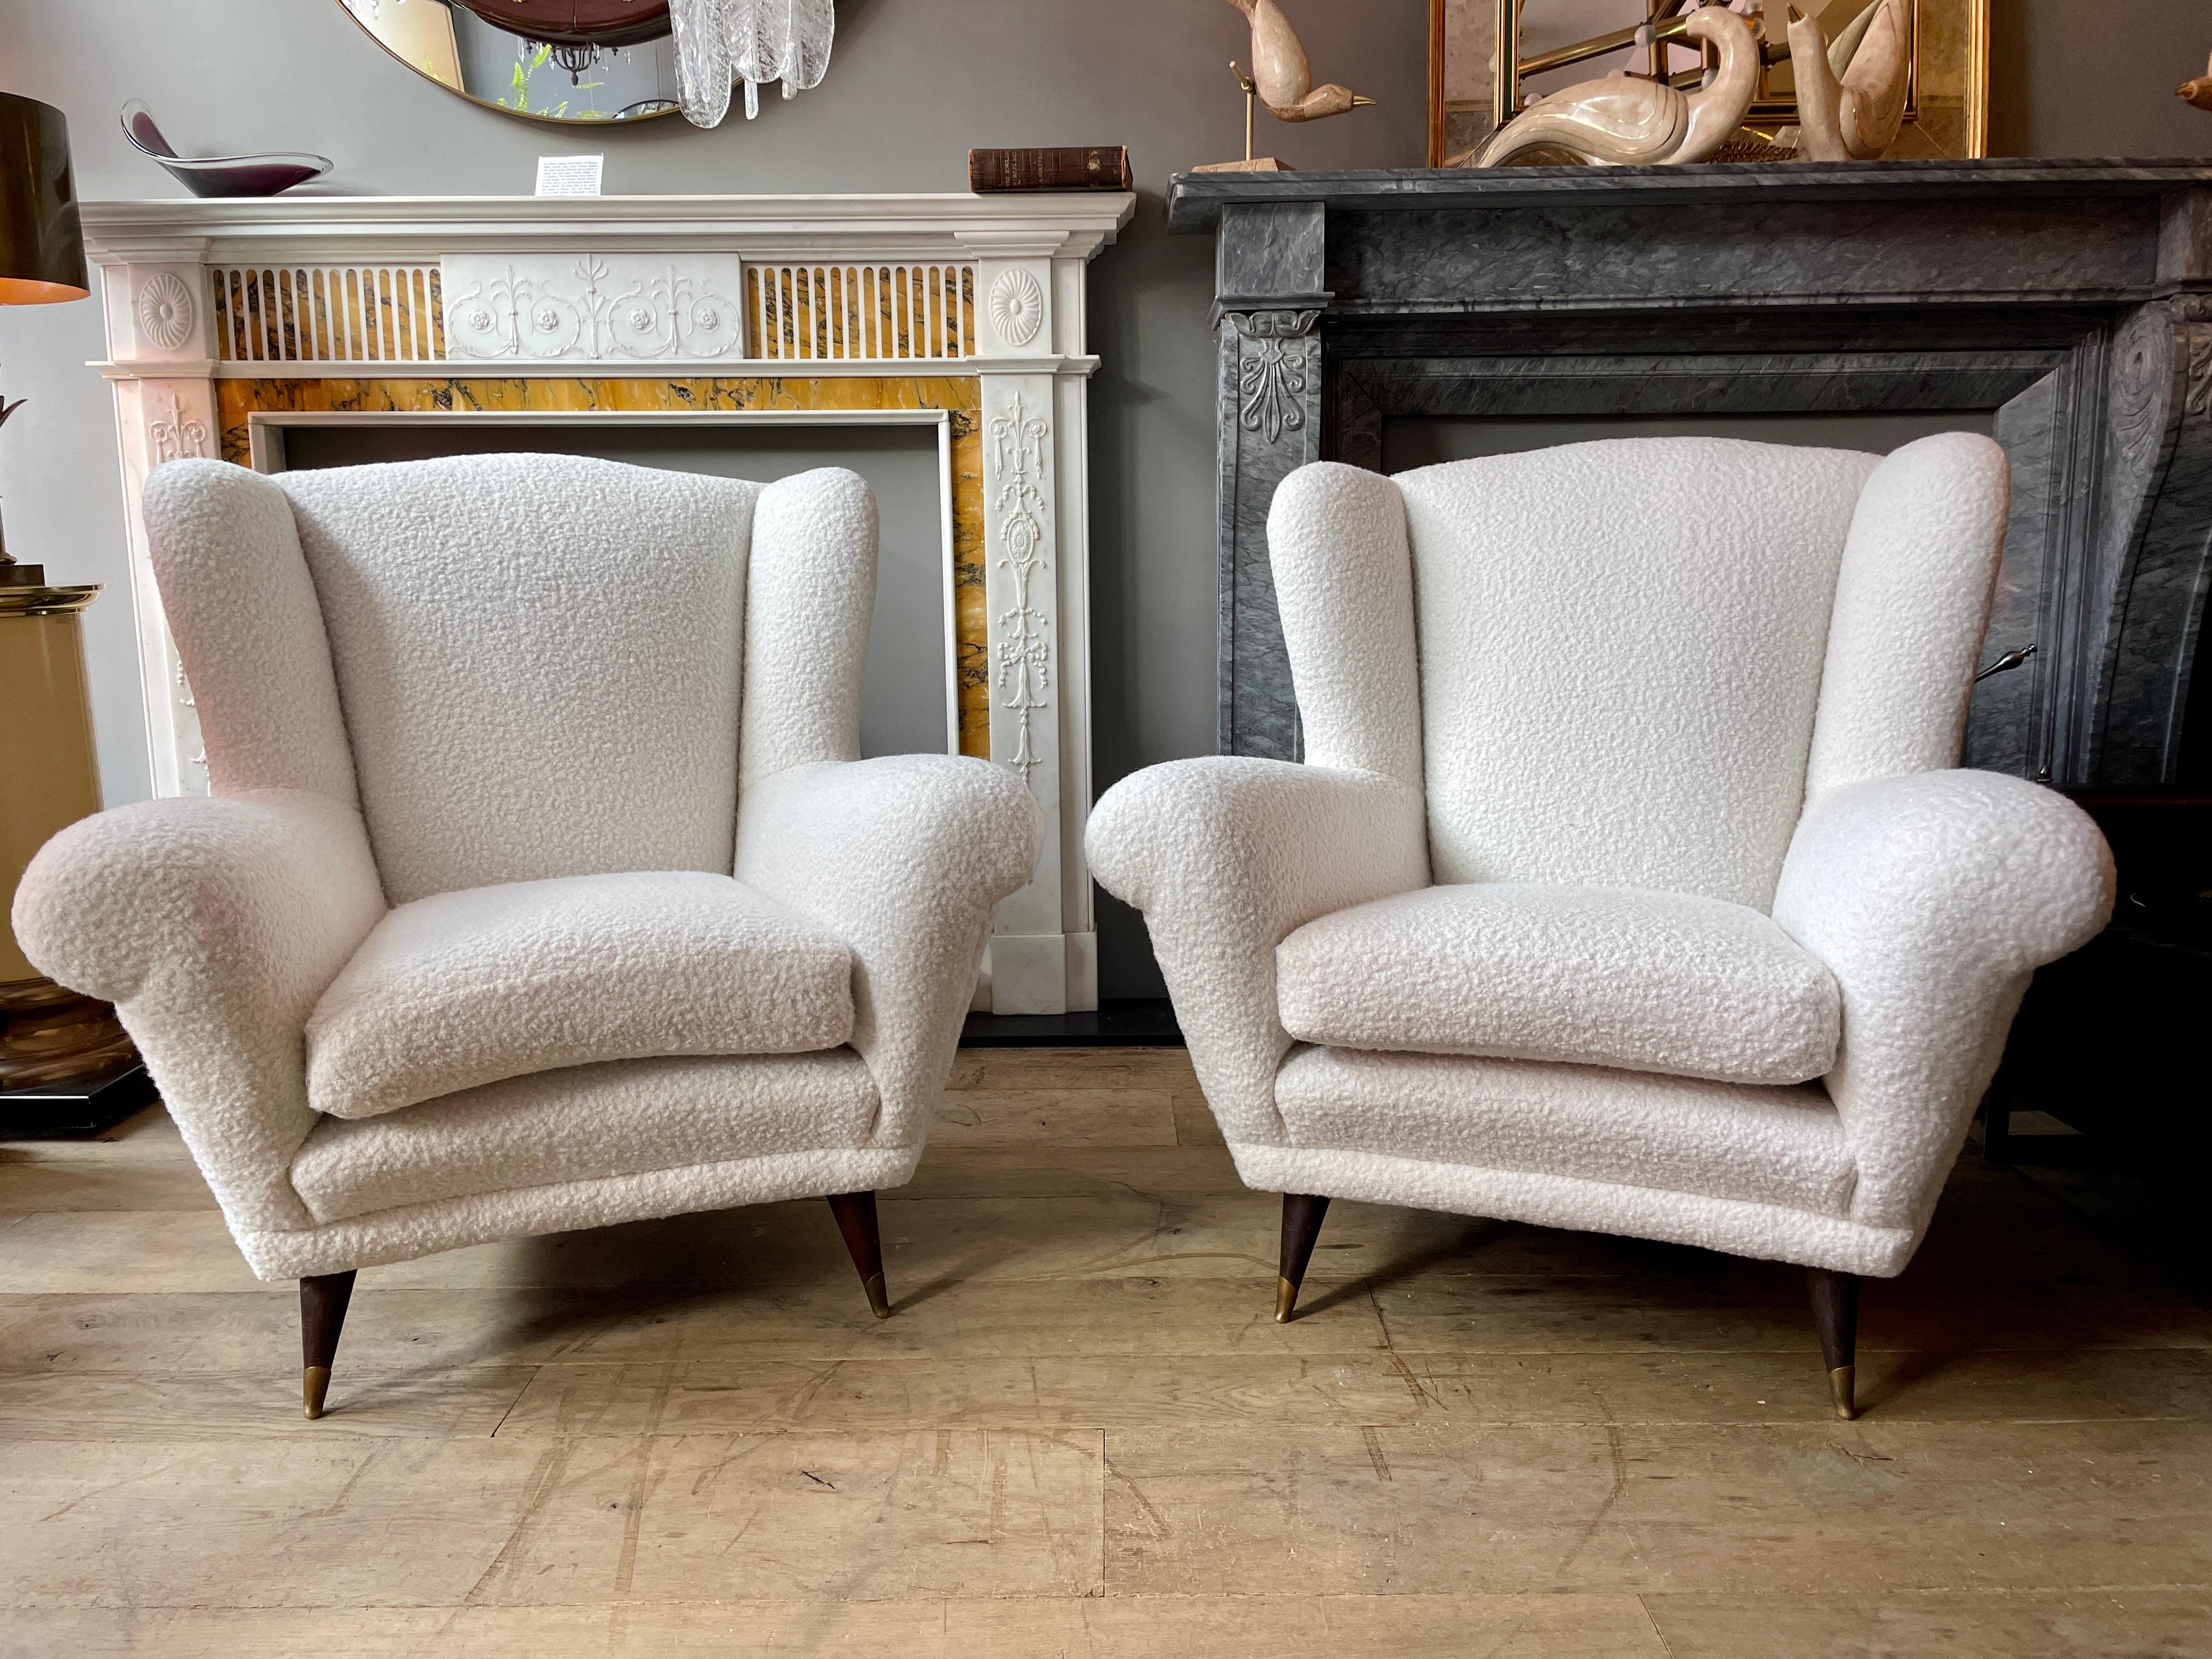 Une grande paire de fauteuils italiens à dossier ailé des années 1950, avec un design italien typique de l'époque, à la fois anguleux et courbé. Sur des pieds coniques en bois avec des pieds sabots en laiton. Le coussin de la chaise s'est formé et